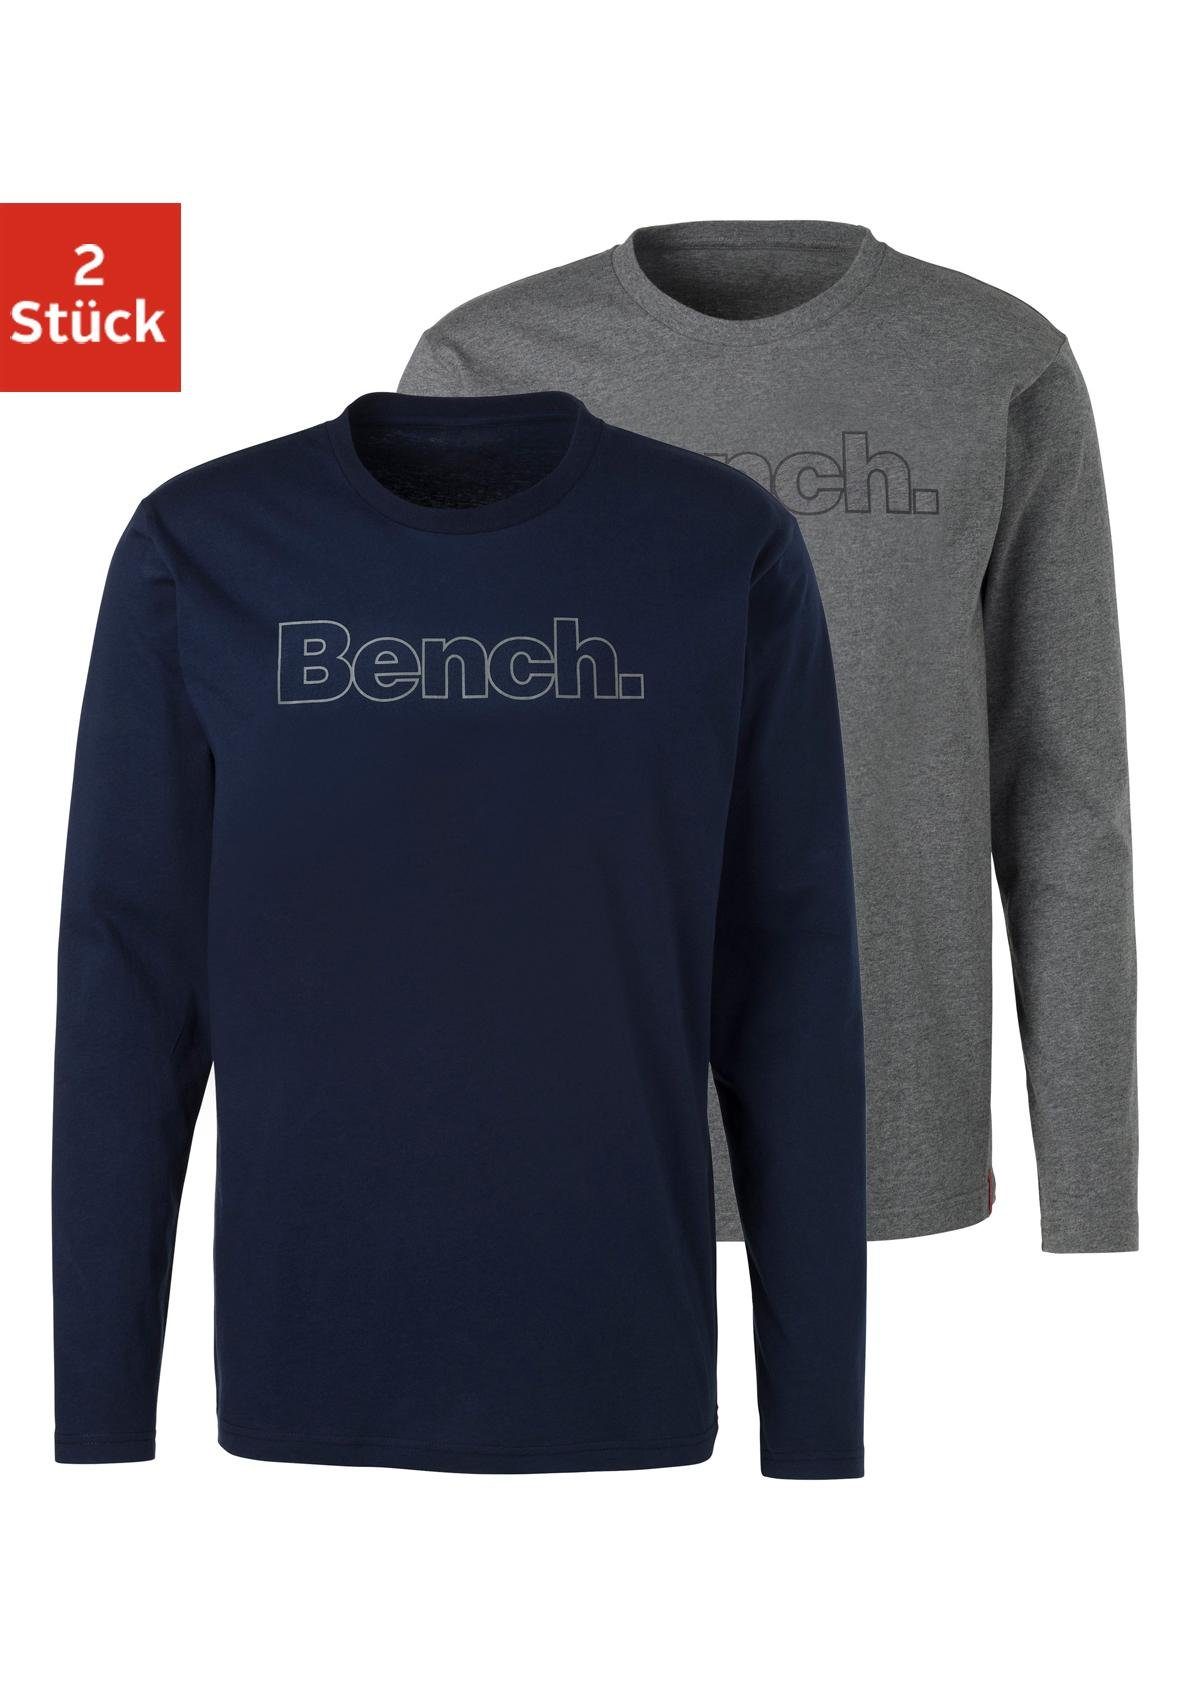 Bench. Loungewear Langarmshirt (2-tlg) mit Bench. Print vorn navy, grau-meliert | Schlafshirts